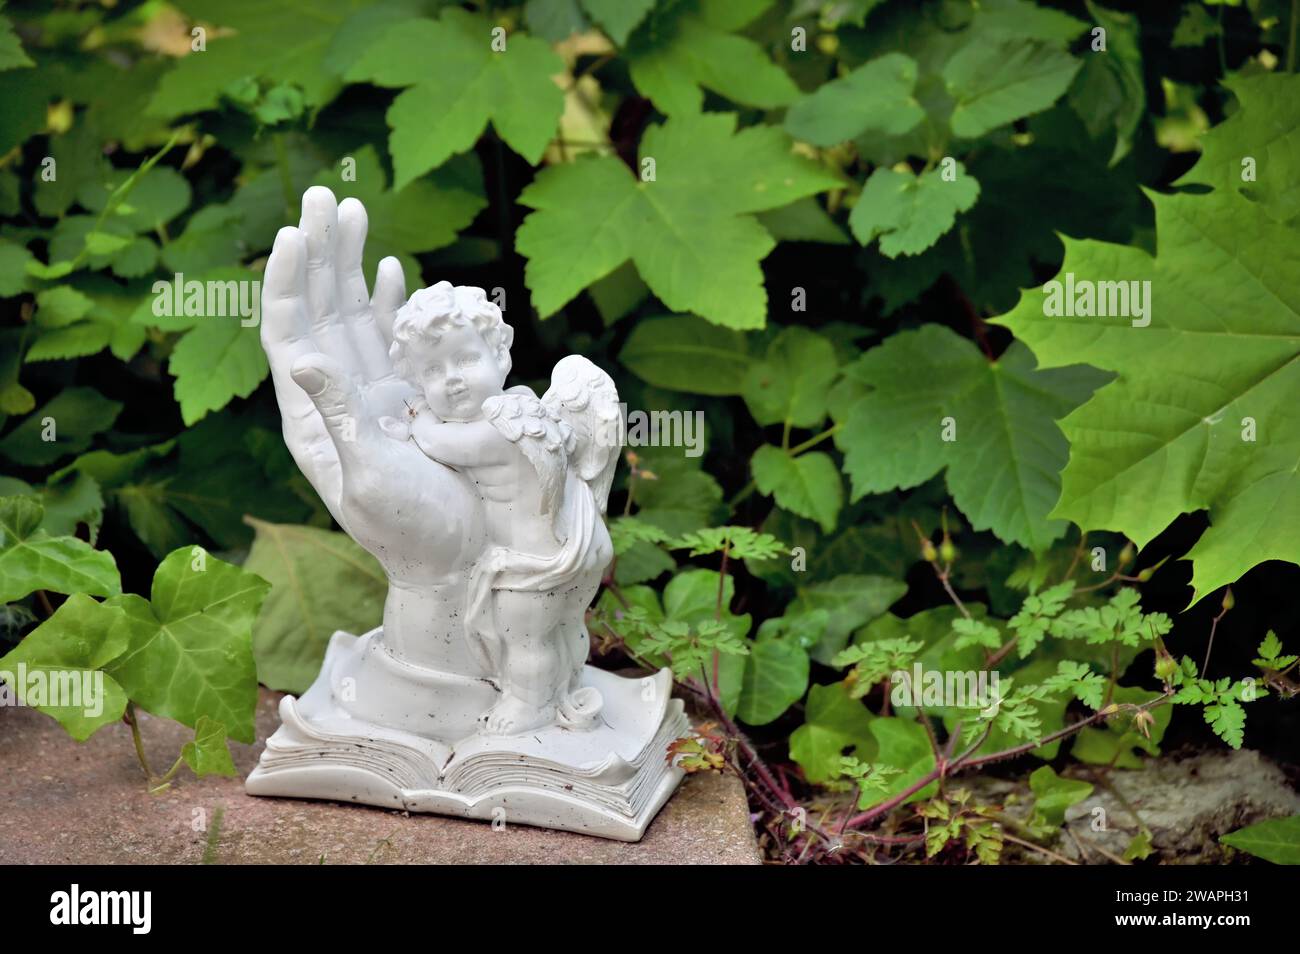 Decorazione a tombe con una mano bianca e un angelo davanti alle foglie verdi Foto Stock